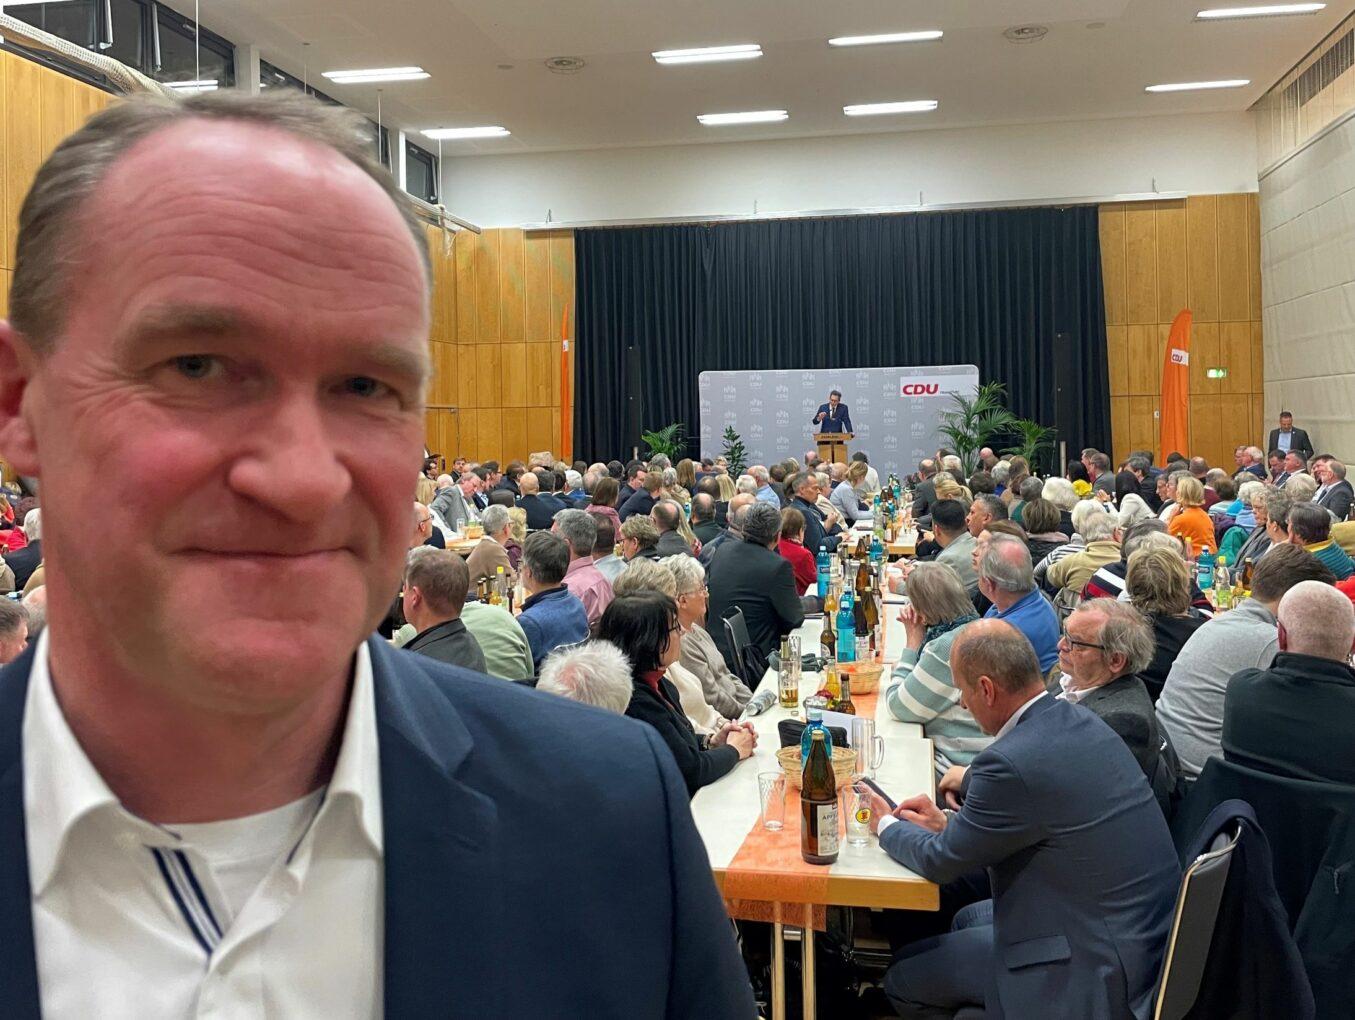 Aufbruchstimmung: Herzlichen Glückwunsch an Franzi Sehr zur Wiederwahl - Viel Erfolg für Uwe Becker zur OB-Wahl - Anregender Polit-Talk des Wirtschaftsrats Taunus !